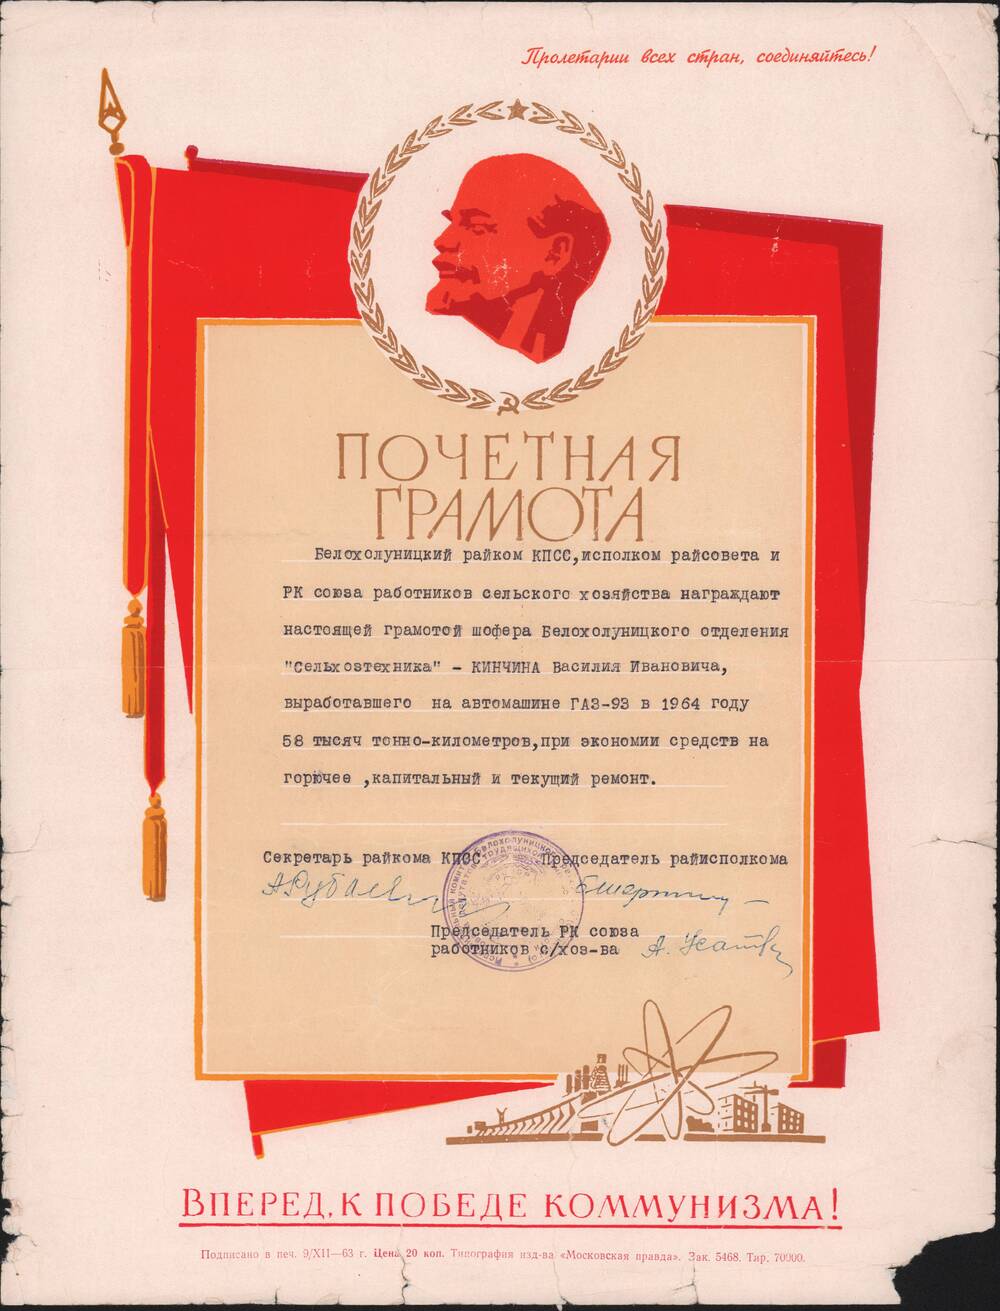 Почётная грамота  1964 года  Кинчина Василия Ивановича.